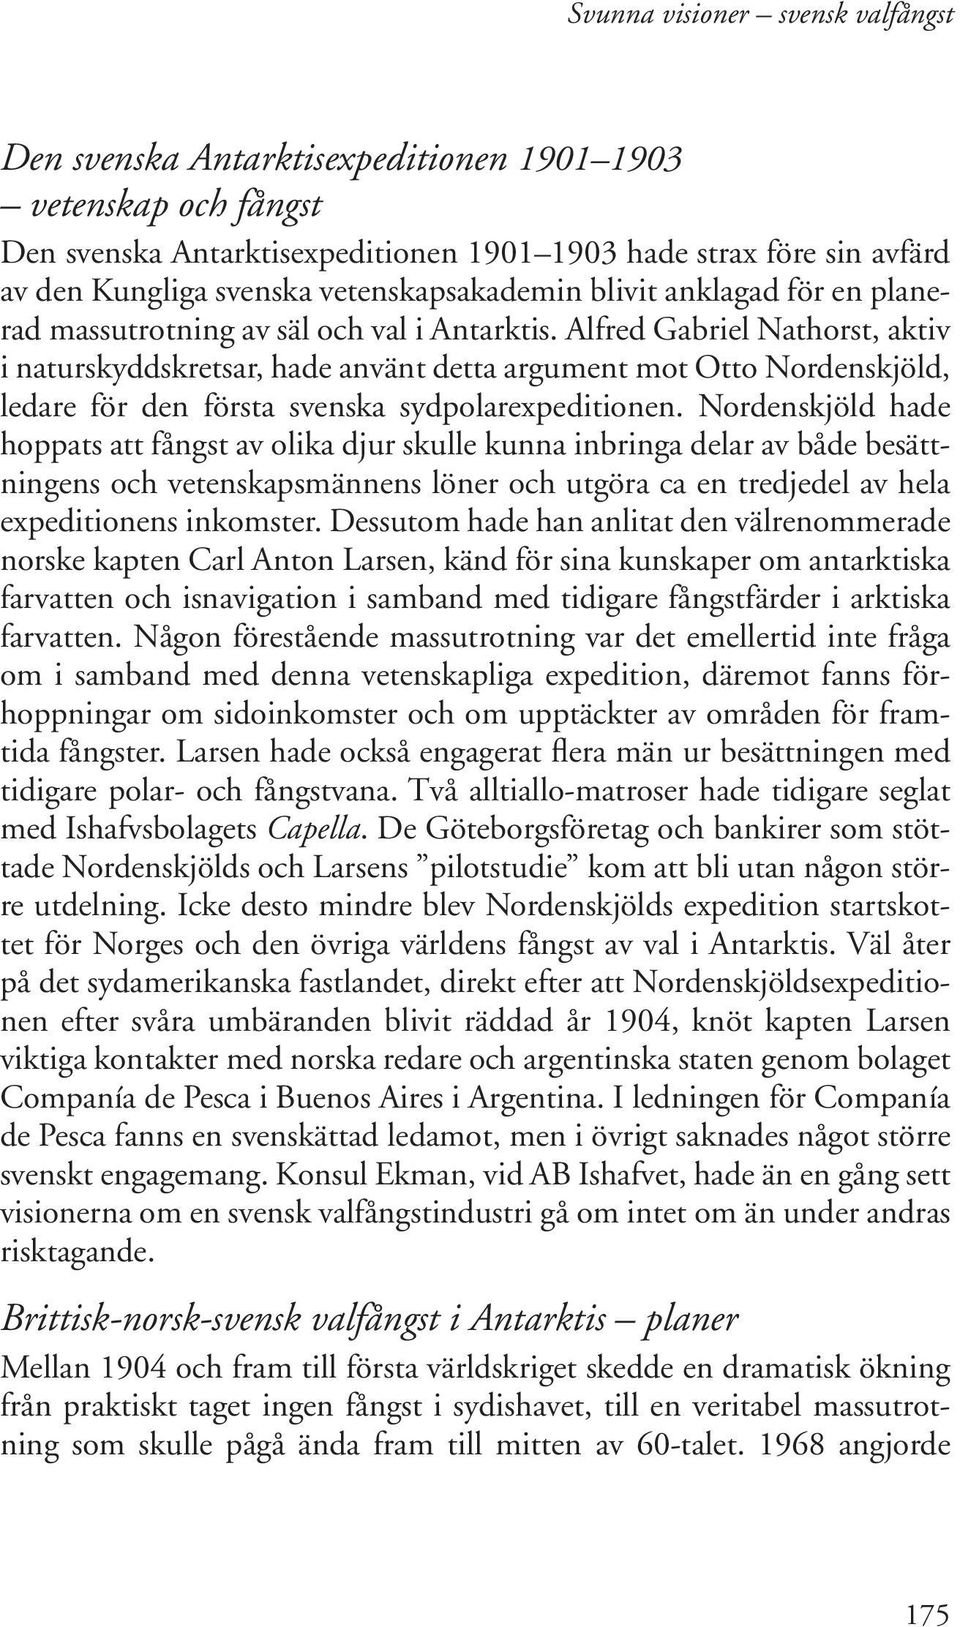 Alfred Gabriel Nathorst, aktiv i naturskyddskretsar, hade använt detta argument mot Otto Nordenskjöld, ledare för den första svenska sydpolarexpeditionen.